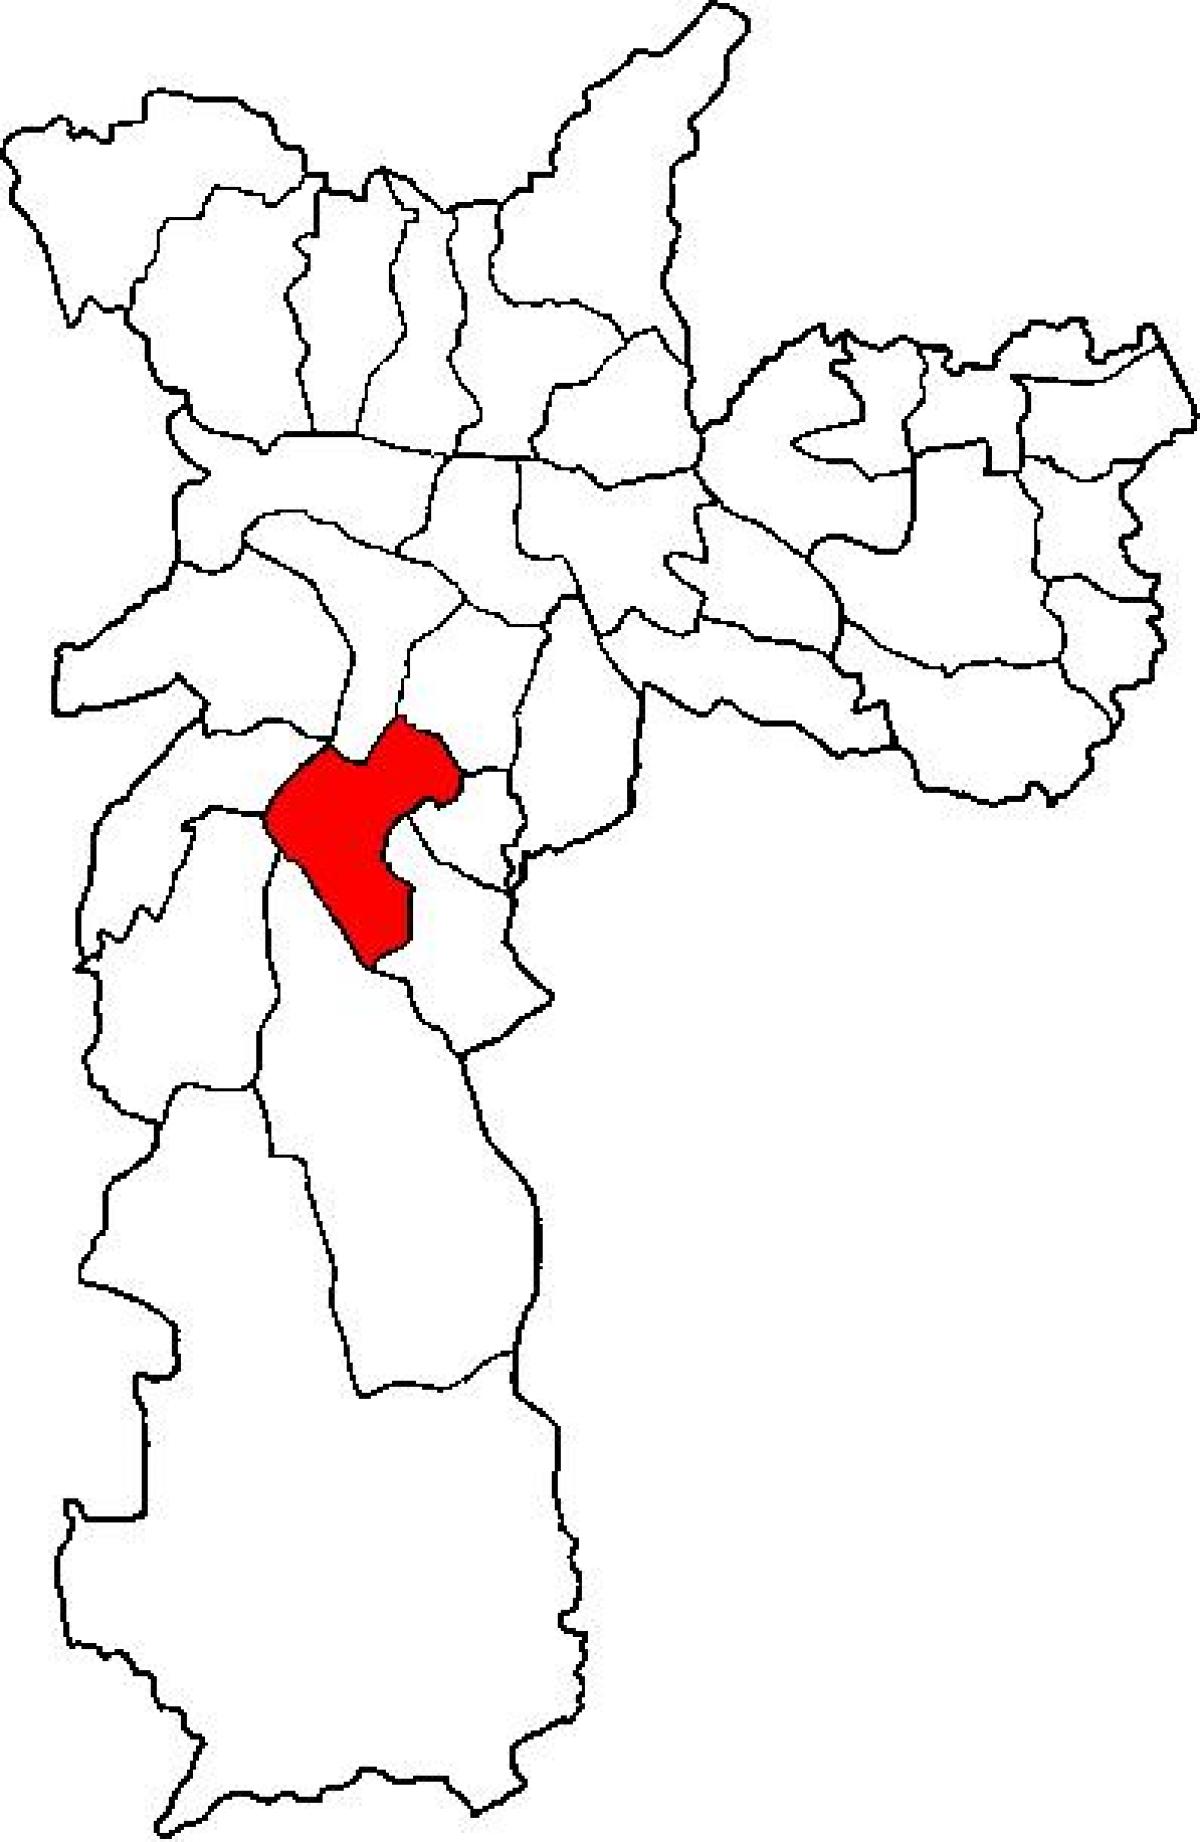 Peta Santo Amaro sub-wilayah São Paulo